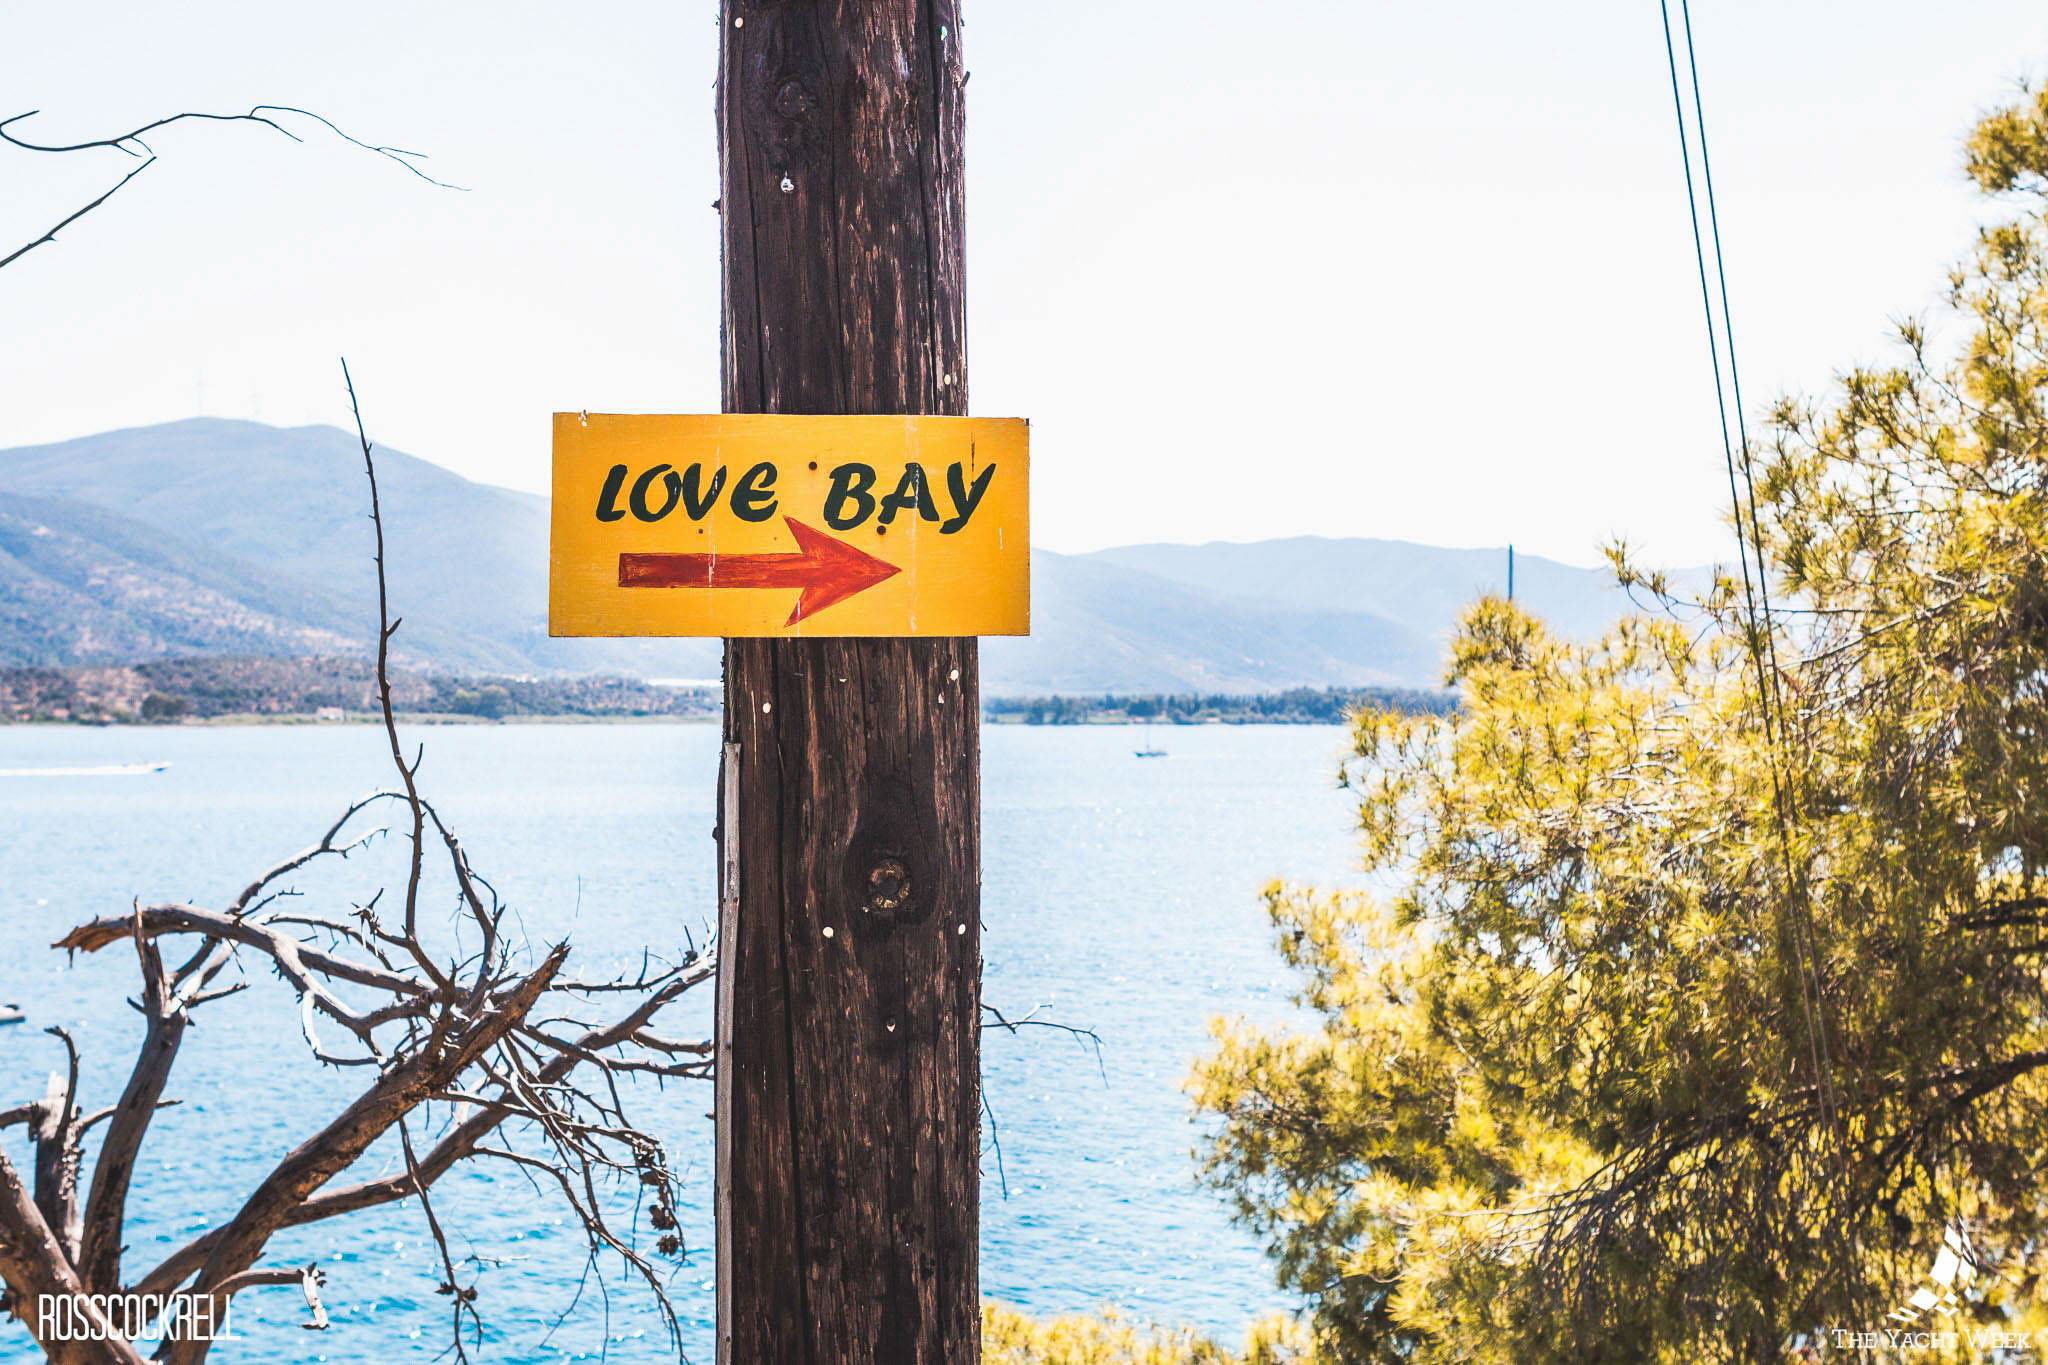 Love Bay in Greece